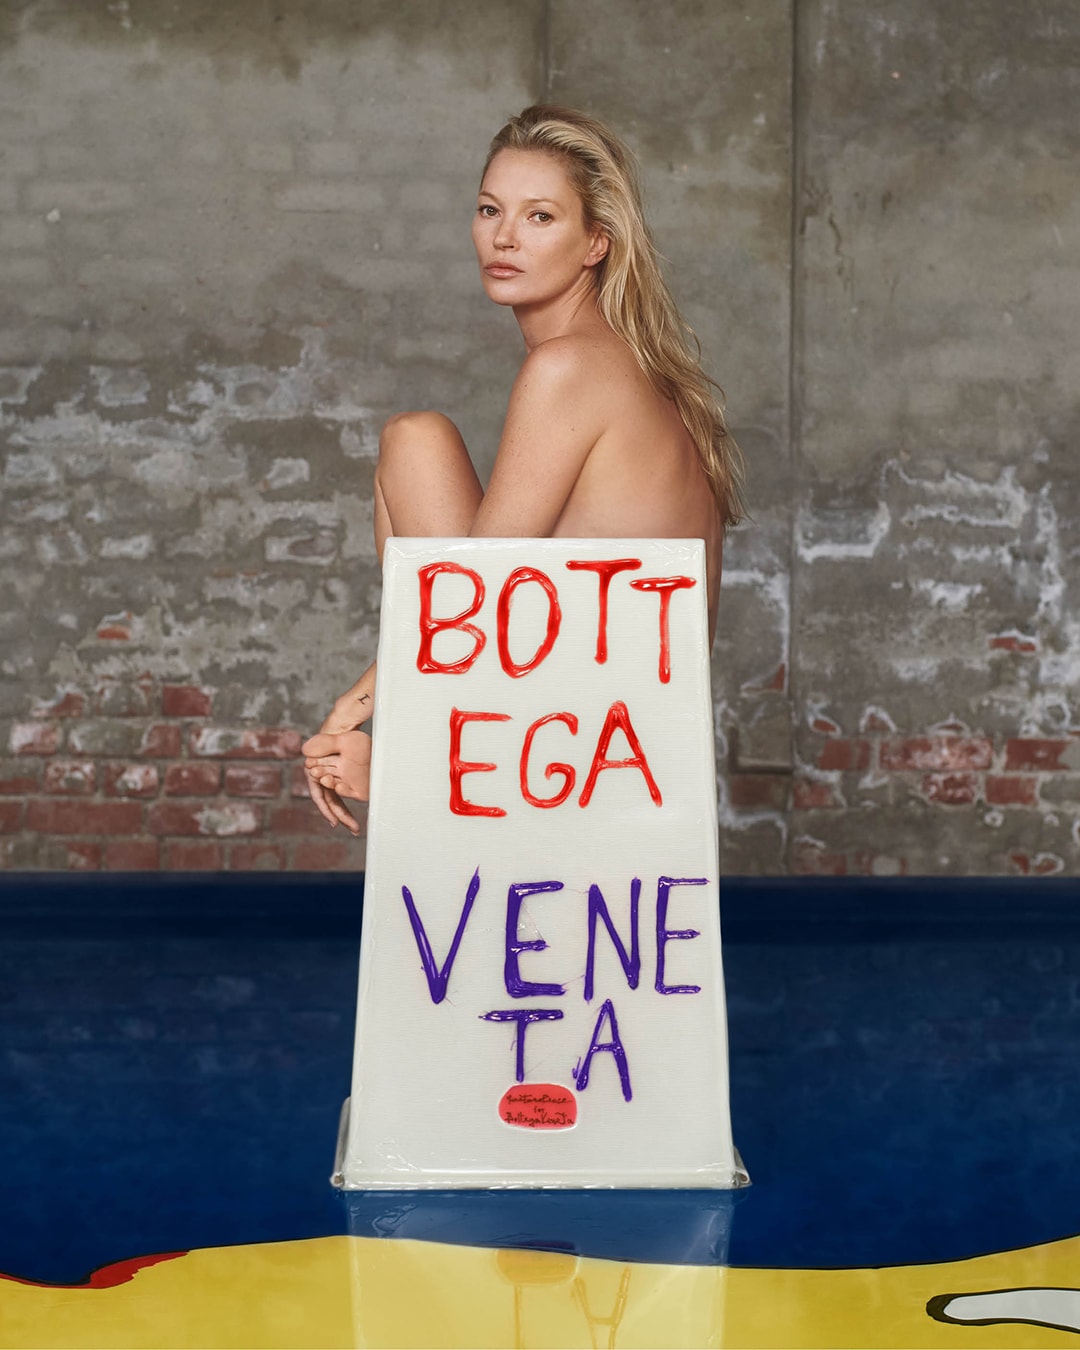 Bottega Veneta 攜手 Gaetano Pesce 前進 Design Miami 展示 Come Stai? 限量書籍及座椅